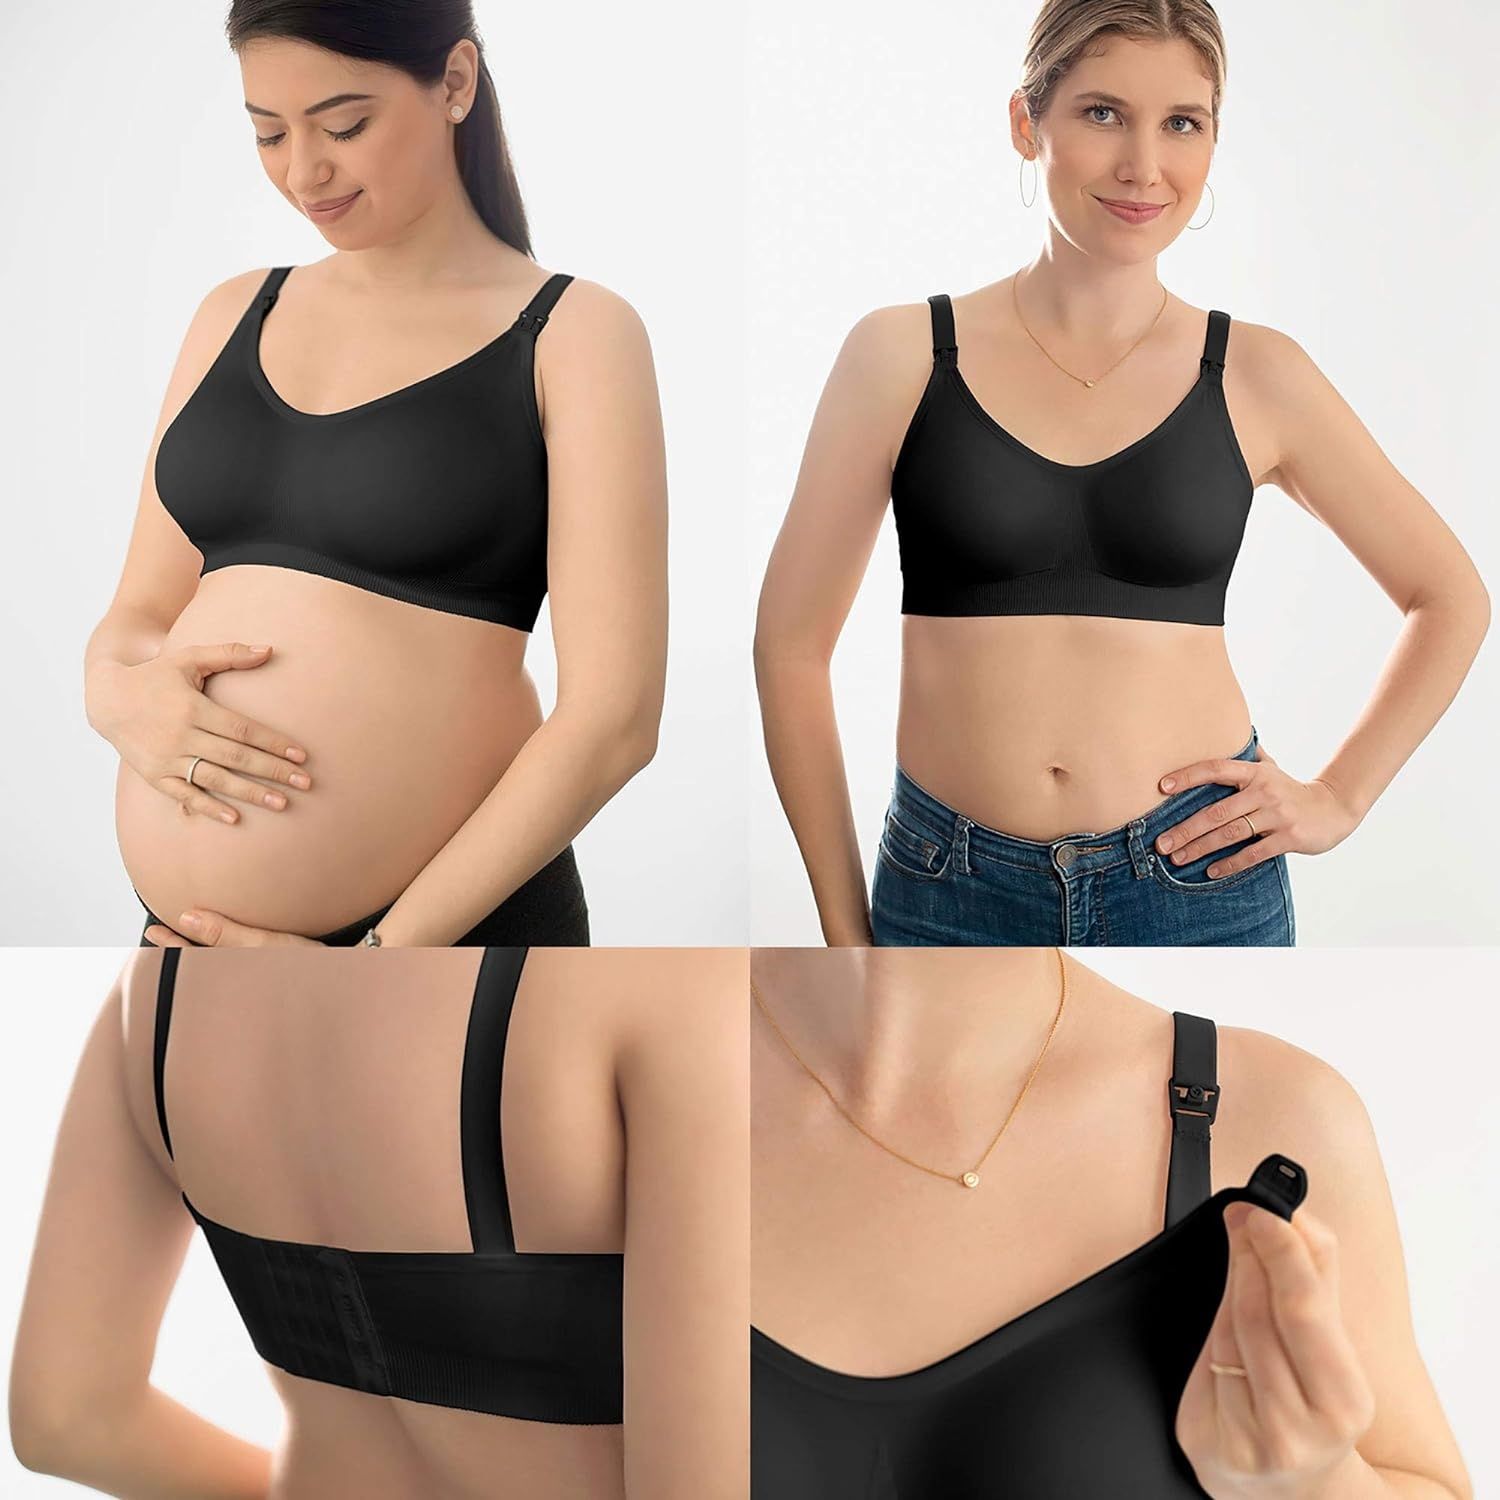 Stanik ciążowy/do karmienia, Medela
Ultimate BodyFit, M